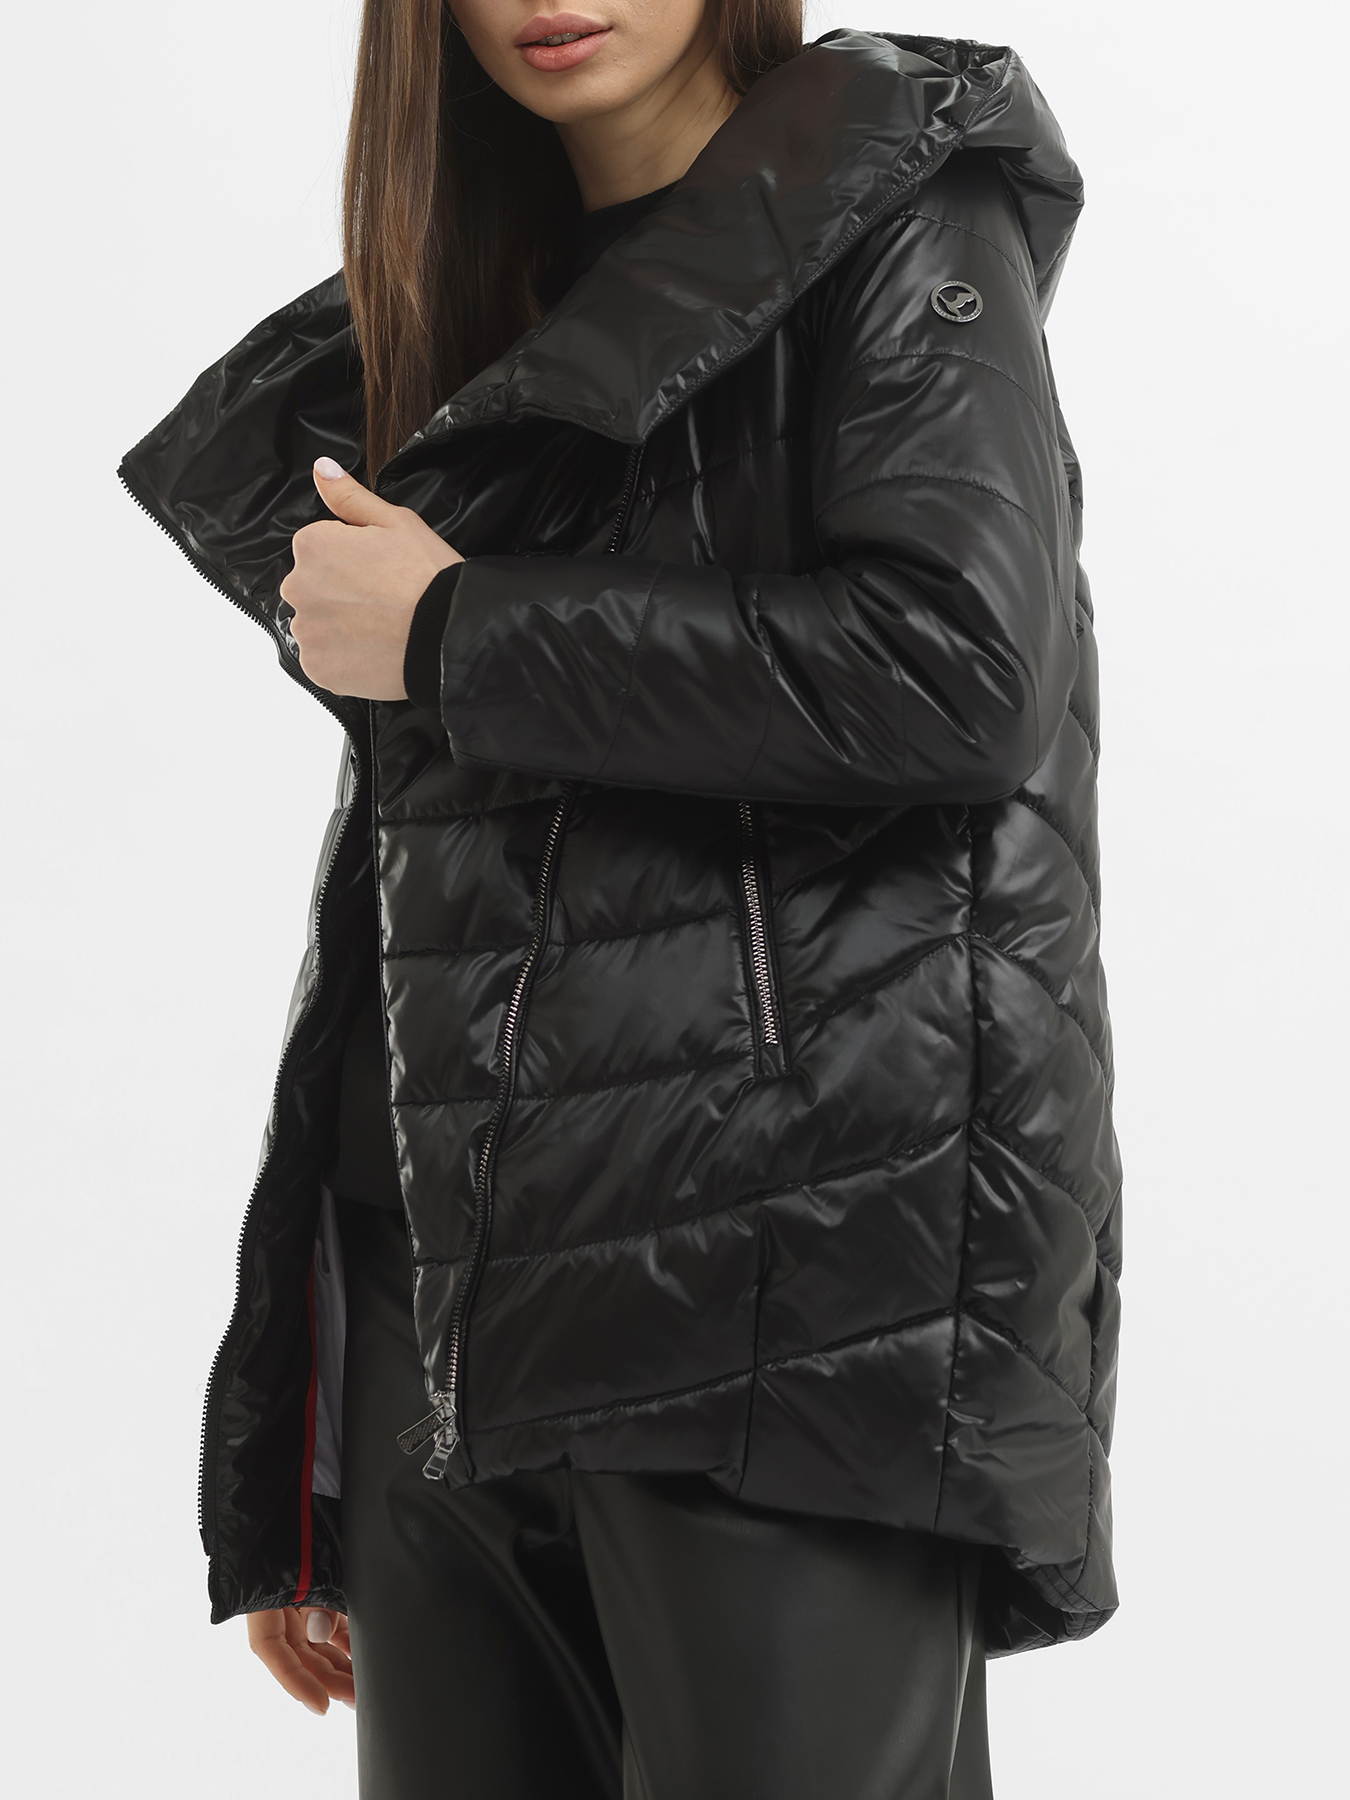 Куртка AVI 418329-020, цвет черный, размер 44 - фото 3